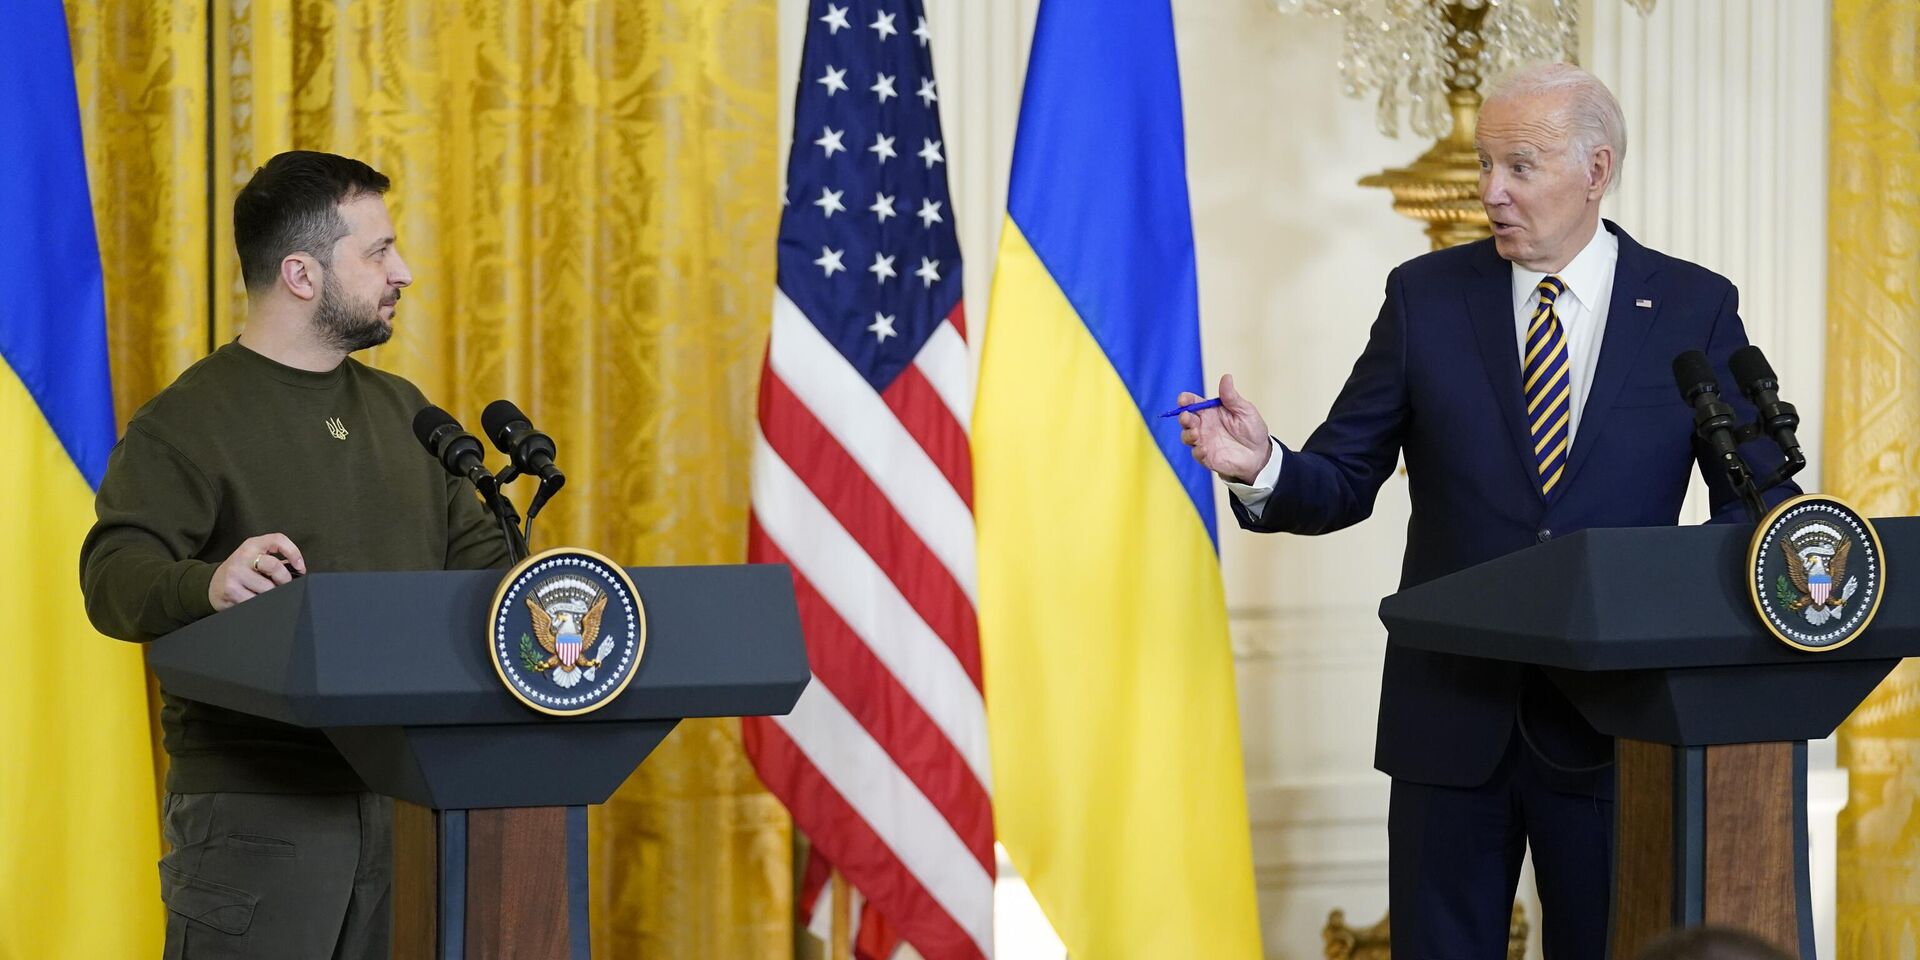 Президент США Джо Байден и президент Украины Владимир Зеленский во время пресс-конференции в Белом доме в Вашингтоне. 21 декабря 2022 года - ИноСМИ, 1920, 25.04.2023